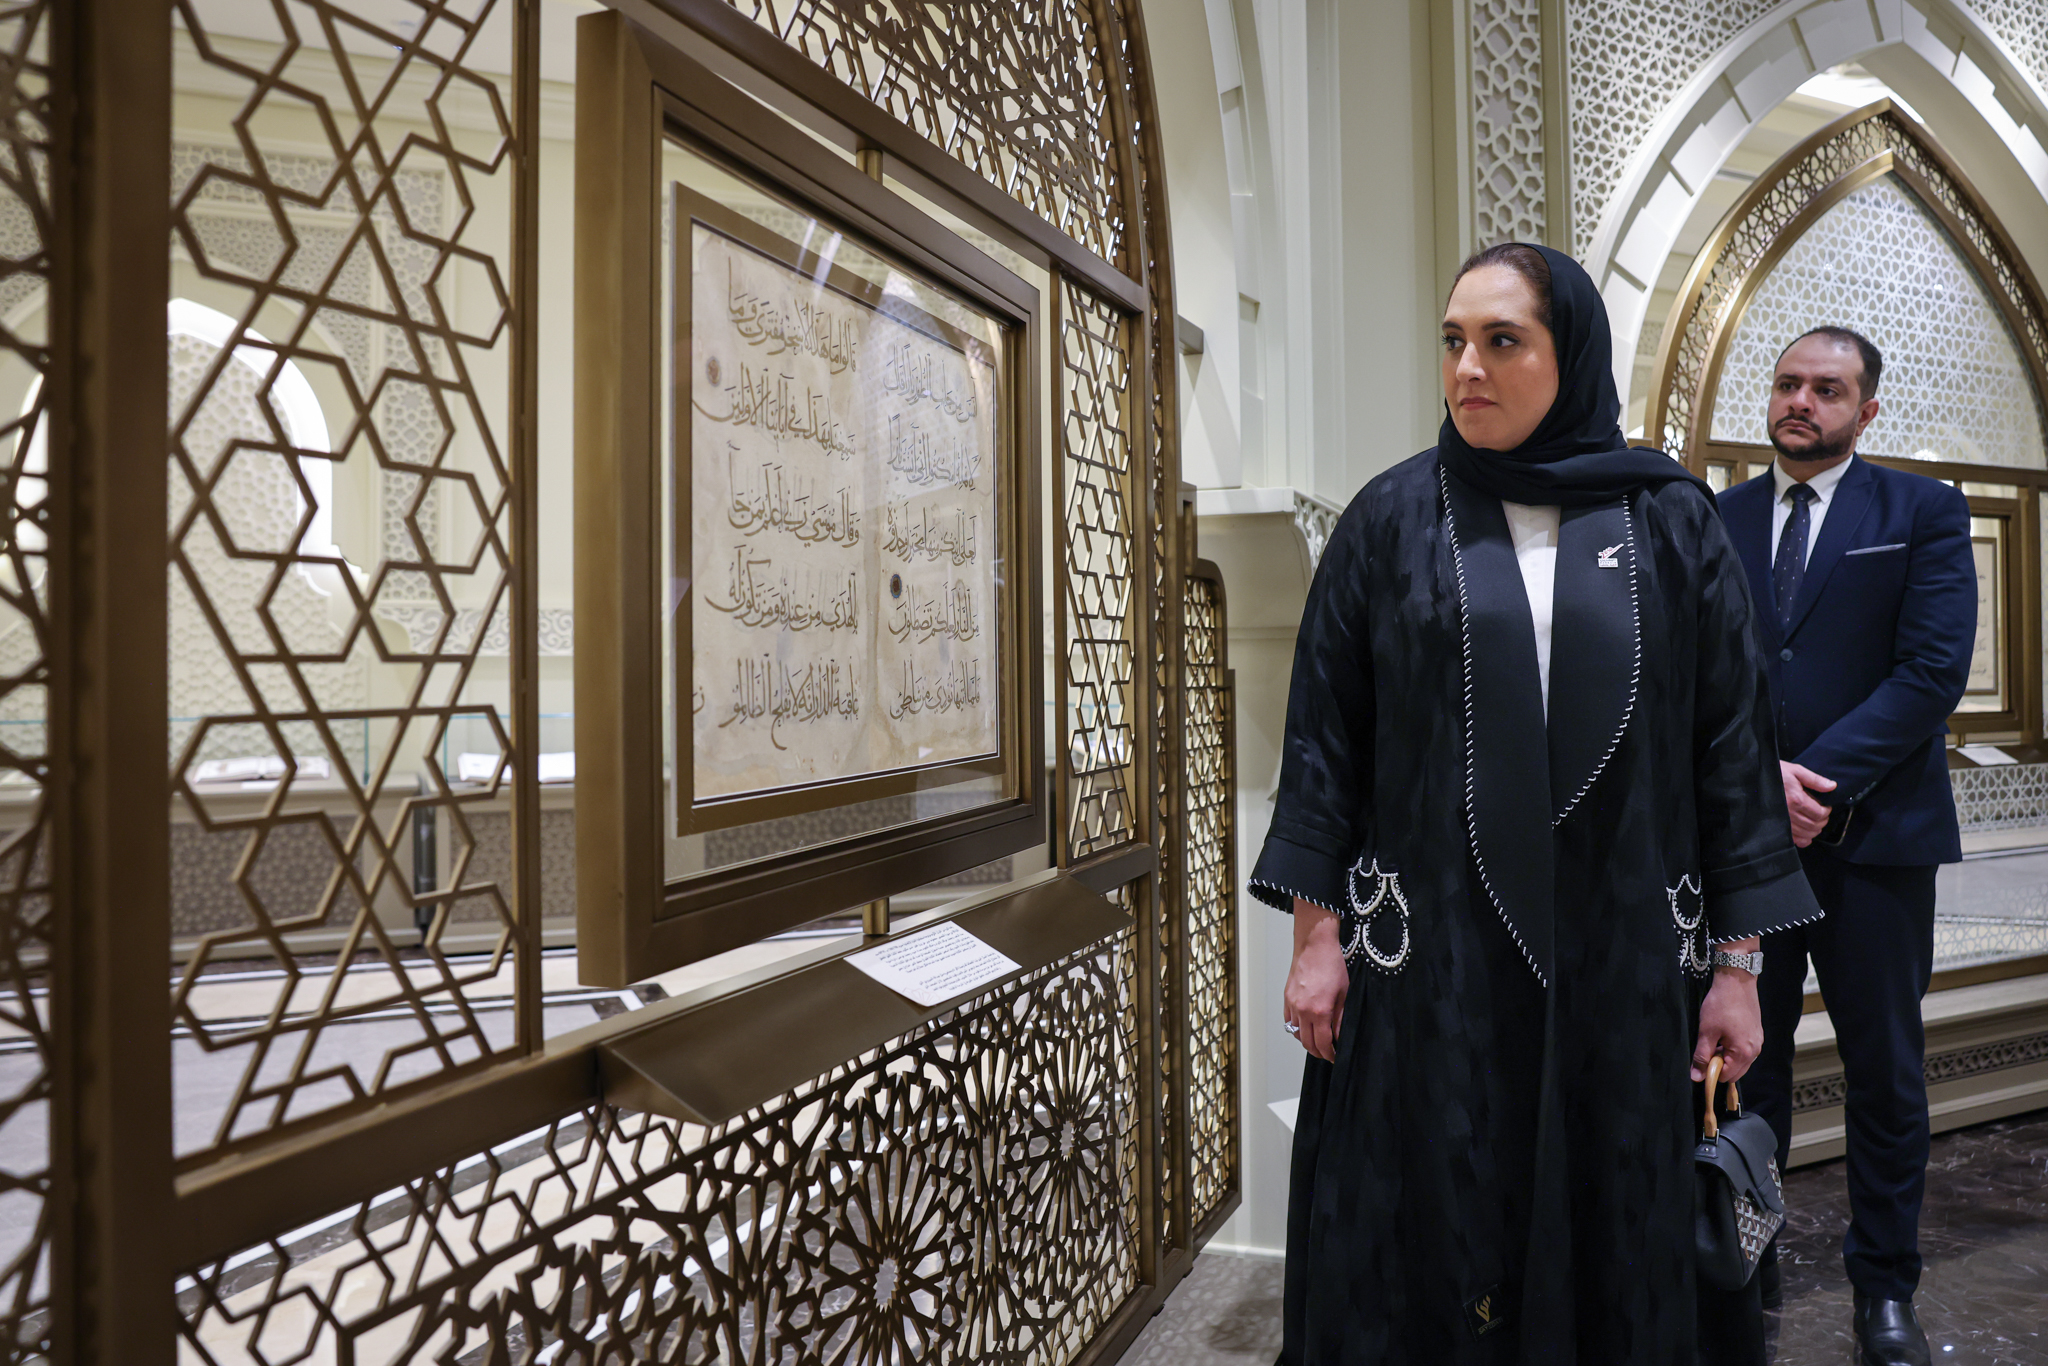 وزيرة الإسكان والتخطيط العمراني في البحرين: "مجمع القرآن الكريم بالشارقة يضم كنوزاً علمية ومعرفية عظيمة".